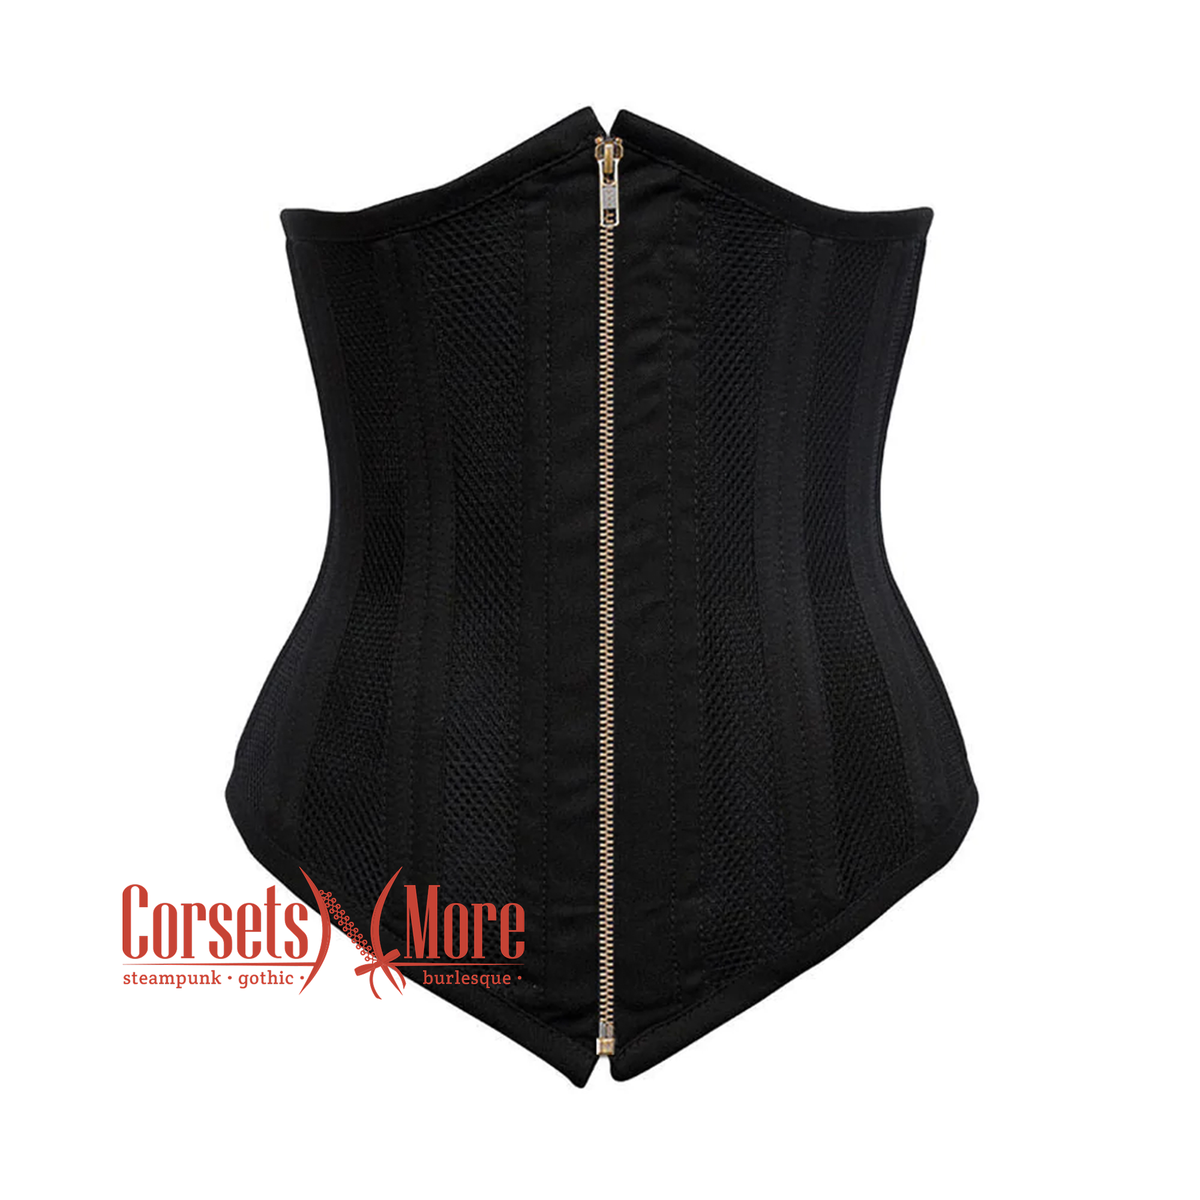 Black Cotton Mesh Double Boned Front Antique Zipper Long Underbust Ste

– CorsetsNmore